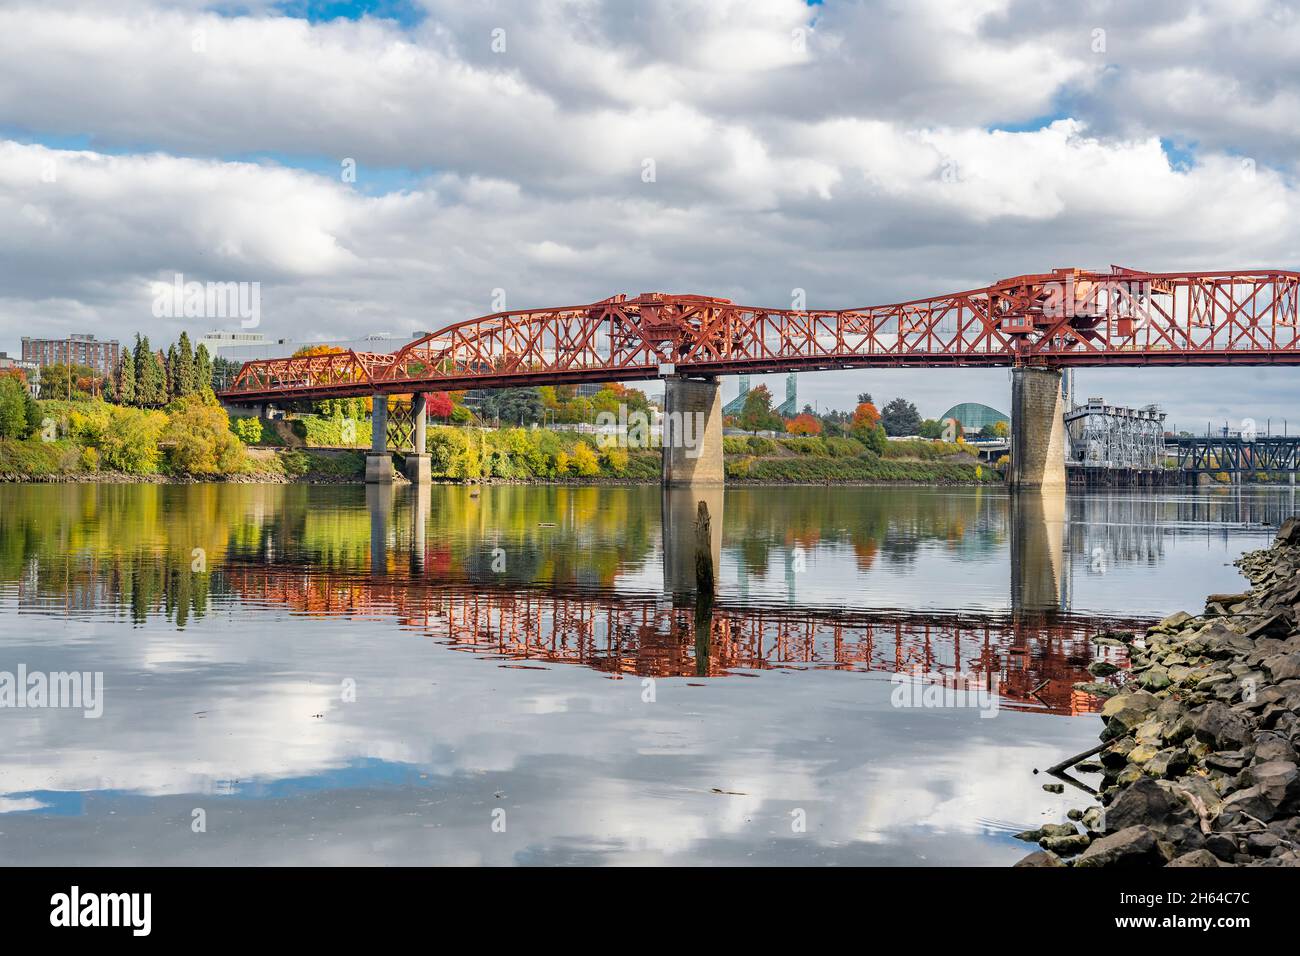 Transport par pont-plan et pont piétonnier de Broadway au-dessus de la rivière Willamette dans le centre-ville de Portland avec des fermes métalliques et des références d'eau Banque D'Images